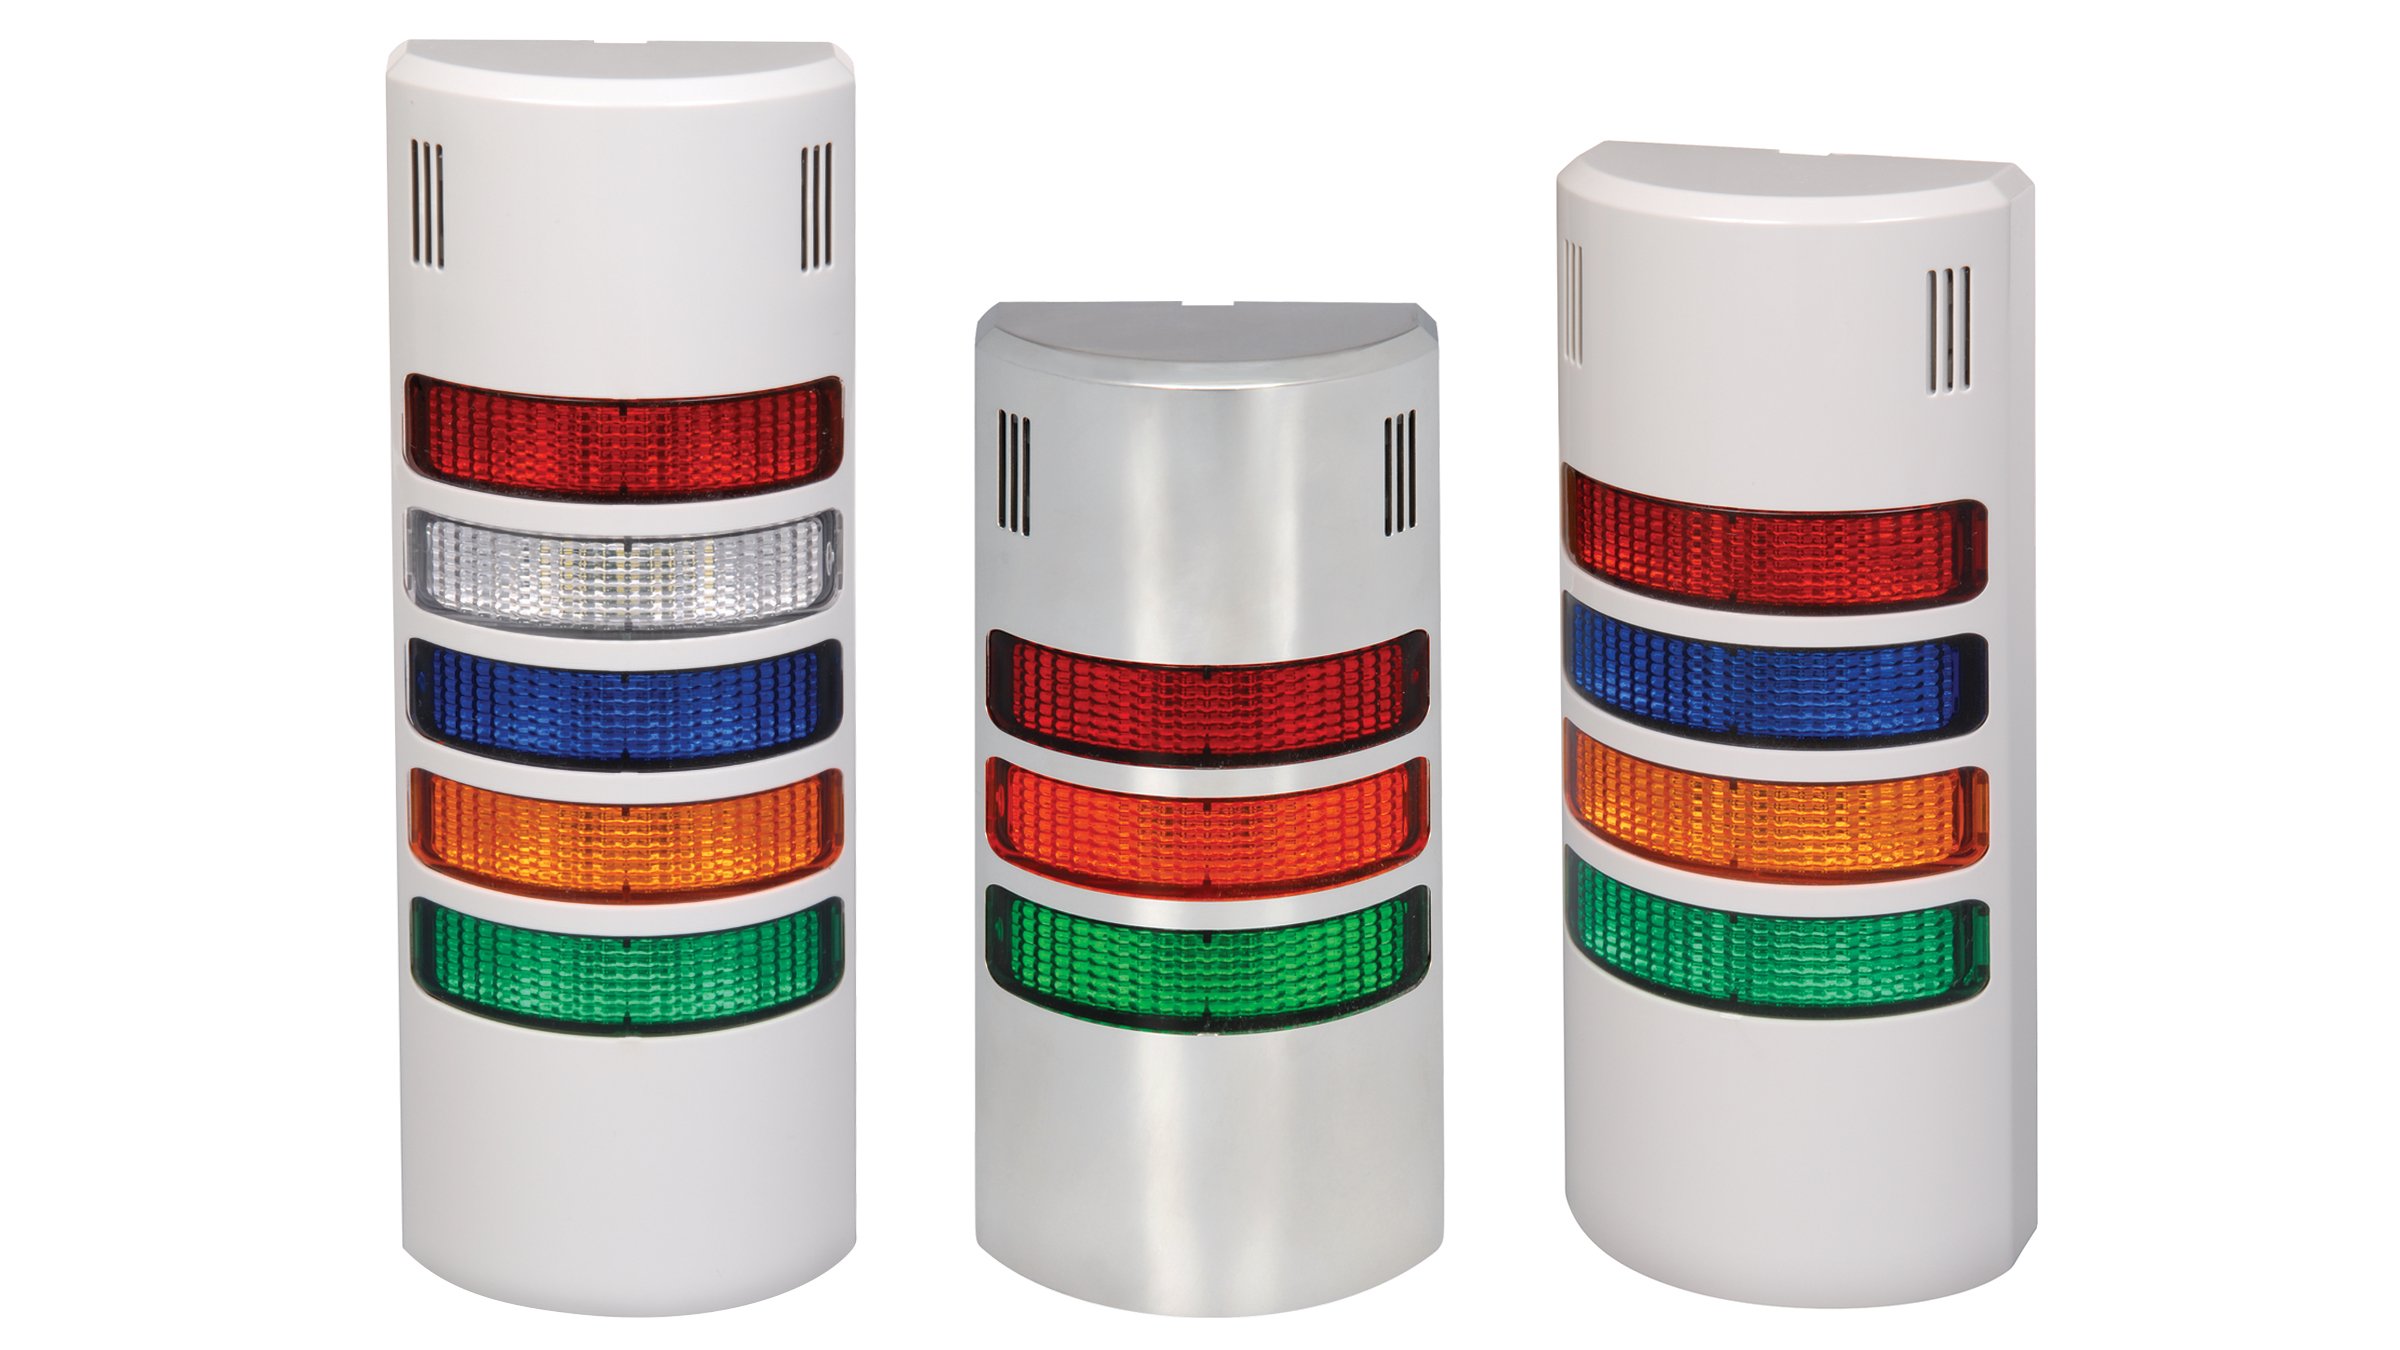 三种版本的 855 壁挂式安装信号灯；其中一种具有红/白/蓝/橙/绿灯；一种具有红/橙/绿灯；一种具有红/蓝/橙/绿灯